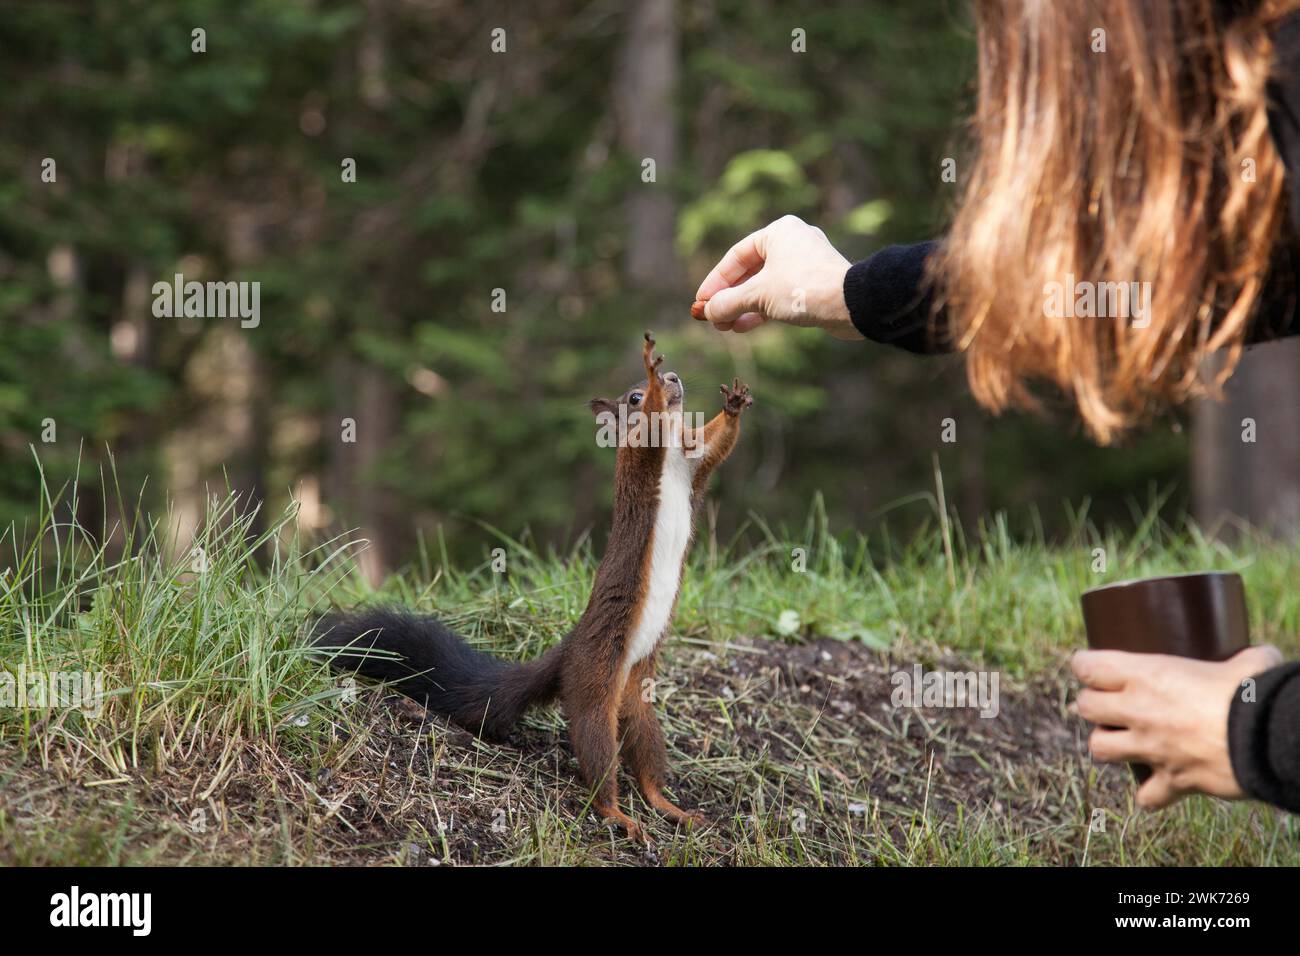 Lo scoiattolo si allunga e raggiunge un nocciolo, l'uomo nutre l'animale Foto Stock